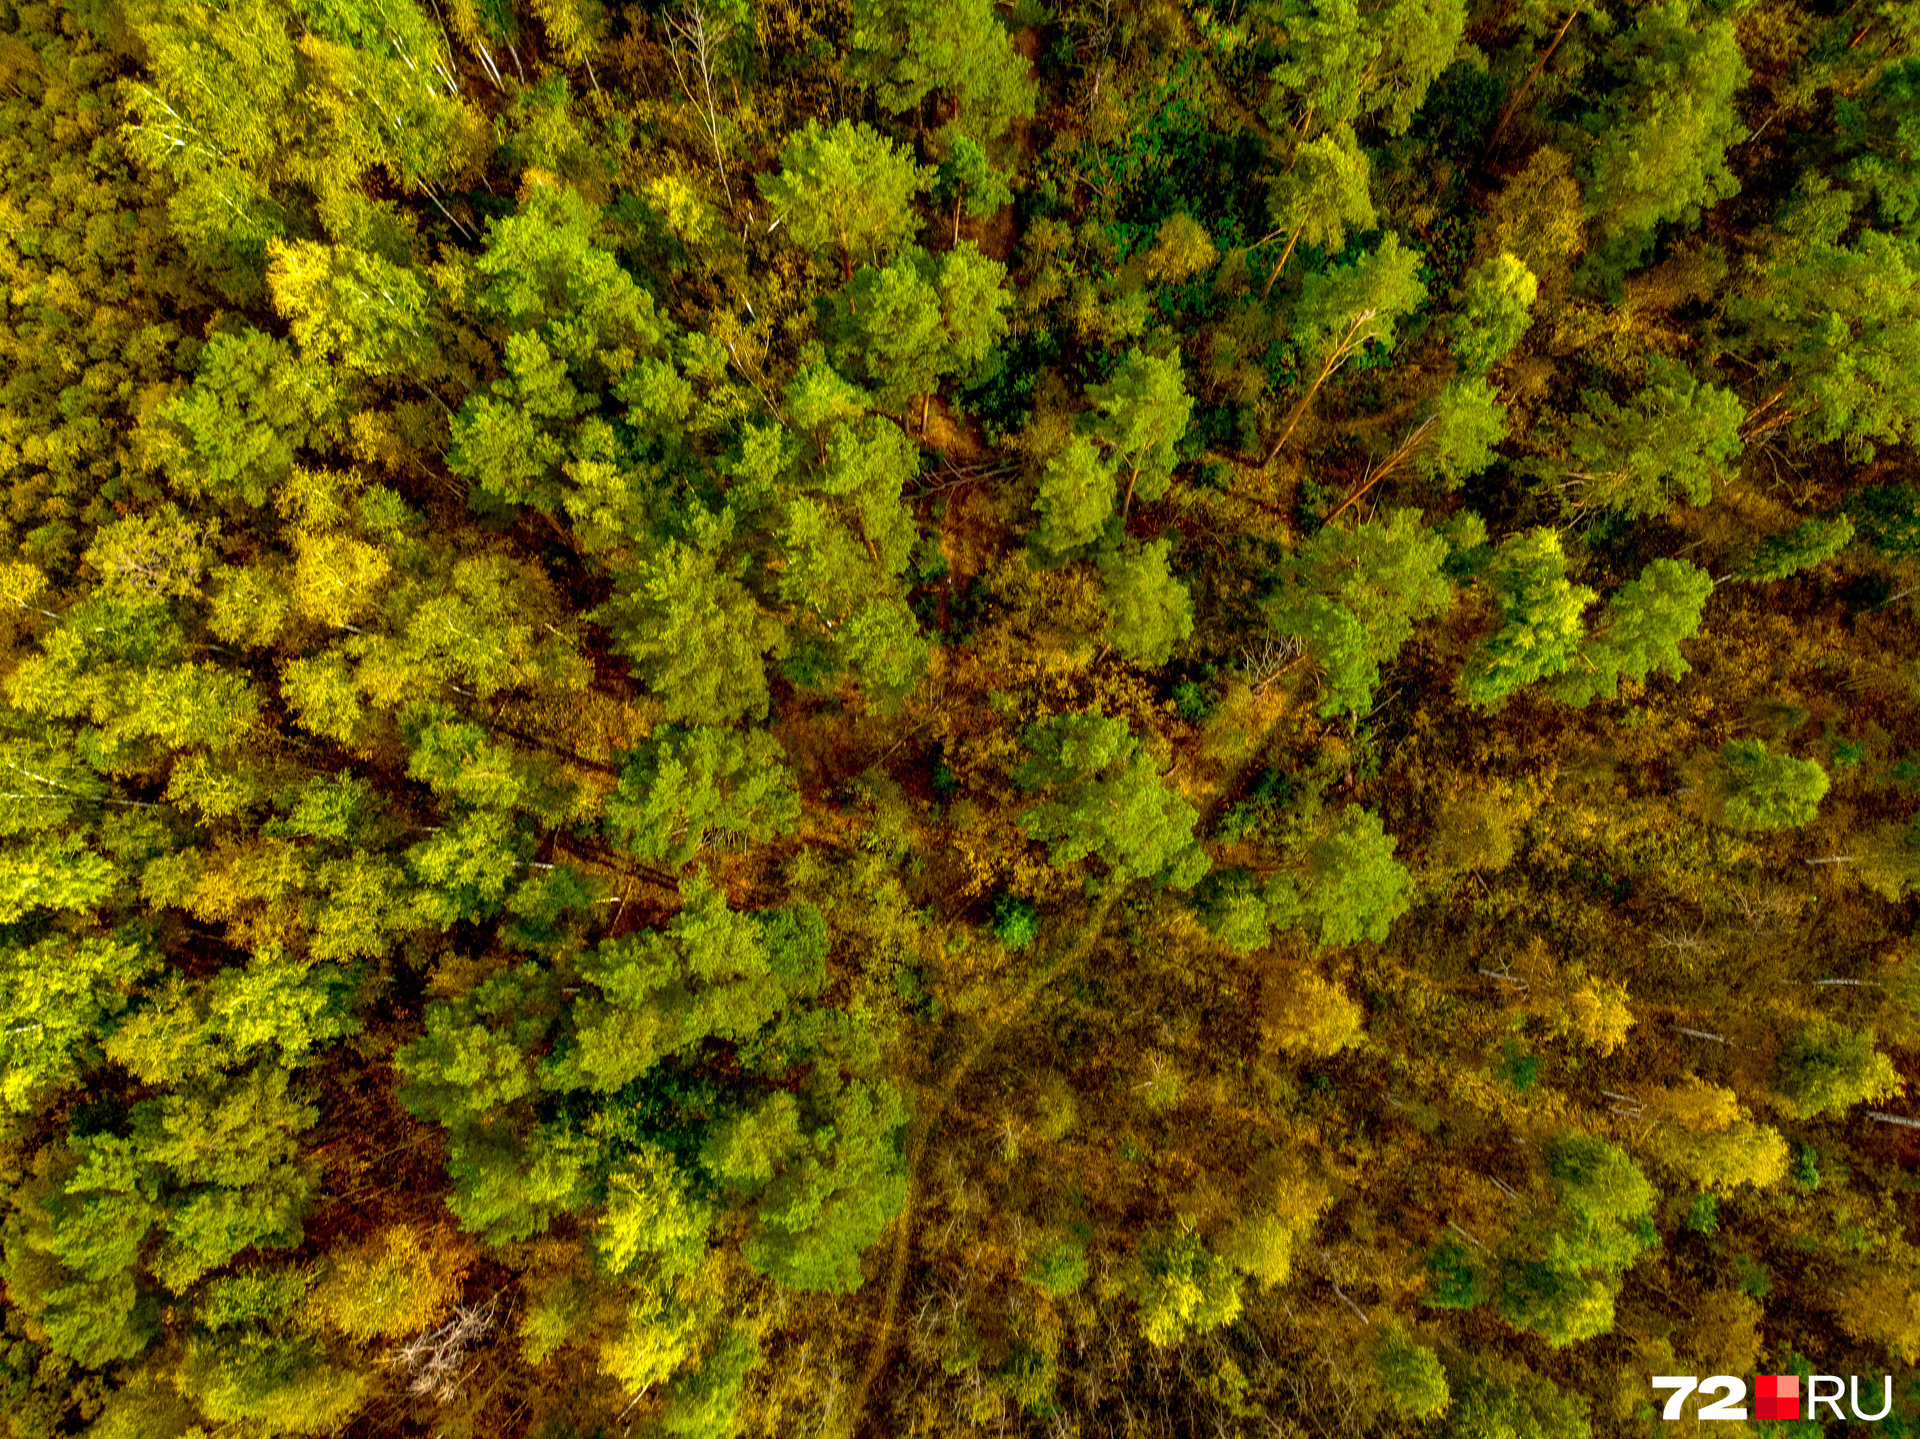 С высоты птичьего полёта можно рассмотреть интересные детали зелено-желтого леса. Здесь есть протоптанная извилистая тропинка и совсем маленькие елочки